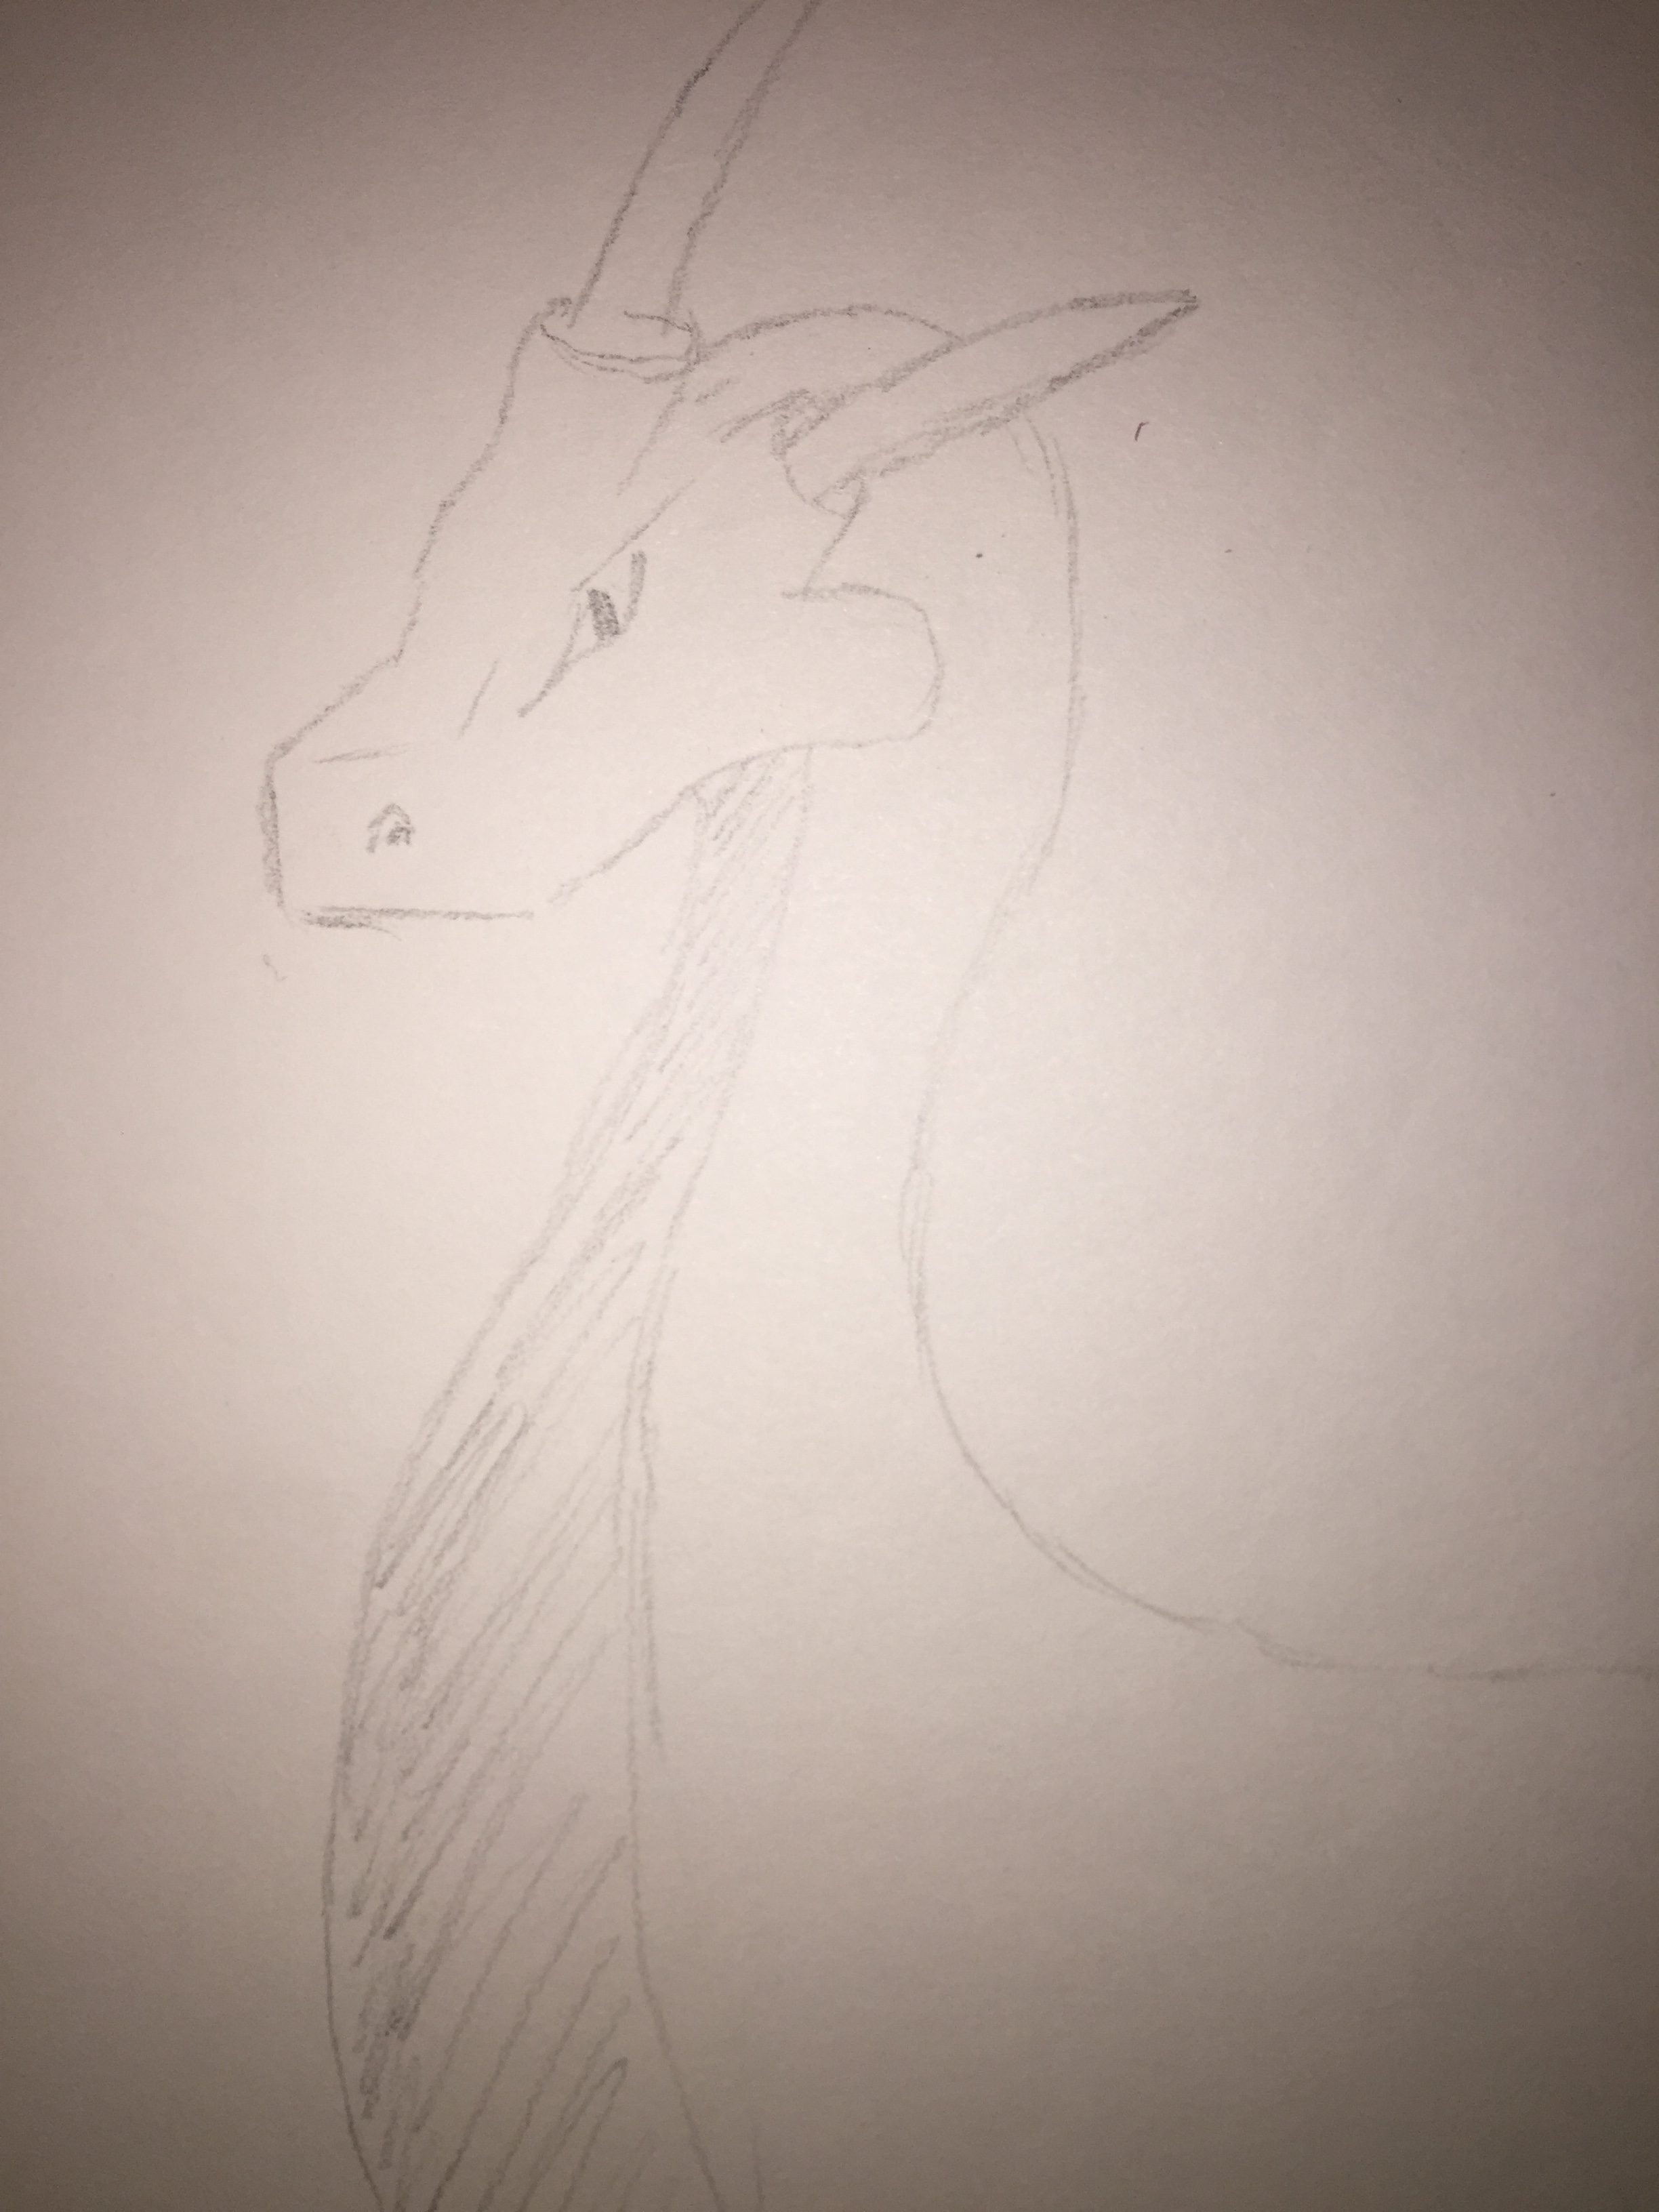 regal dragon in pencil